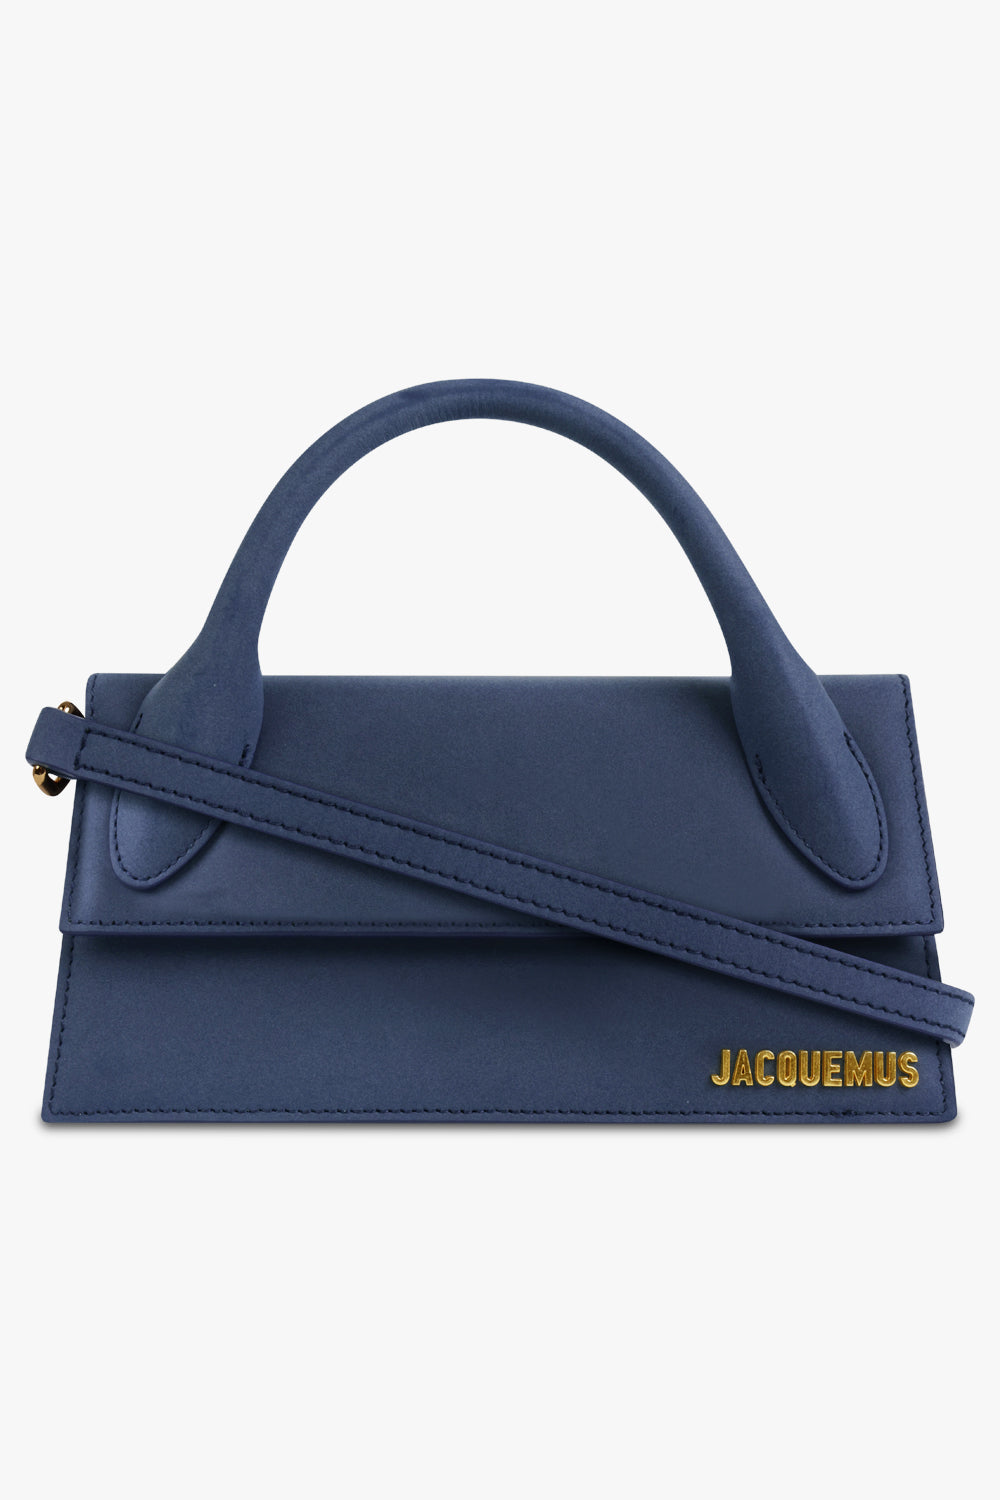 Jacquemus, Bags, Brand New Jacquemus Blue La Montagne Le Chiquito Long